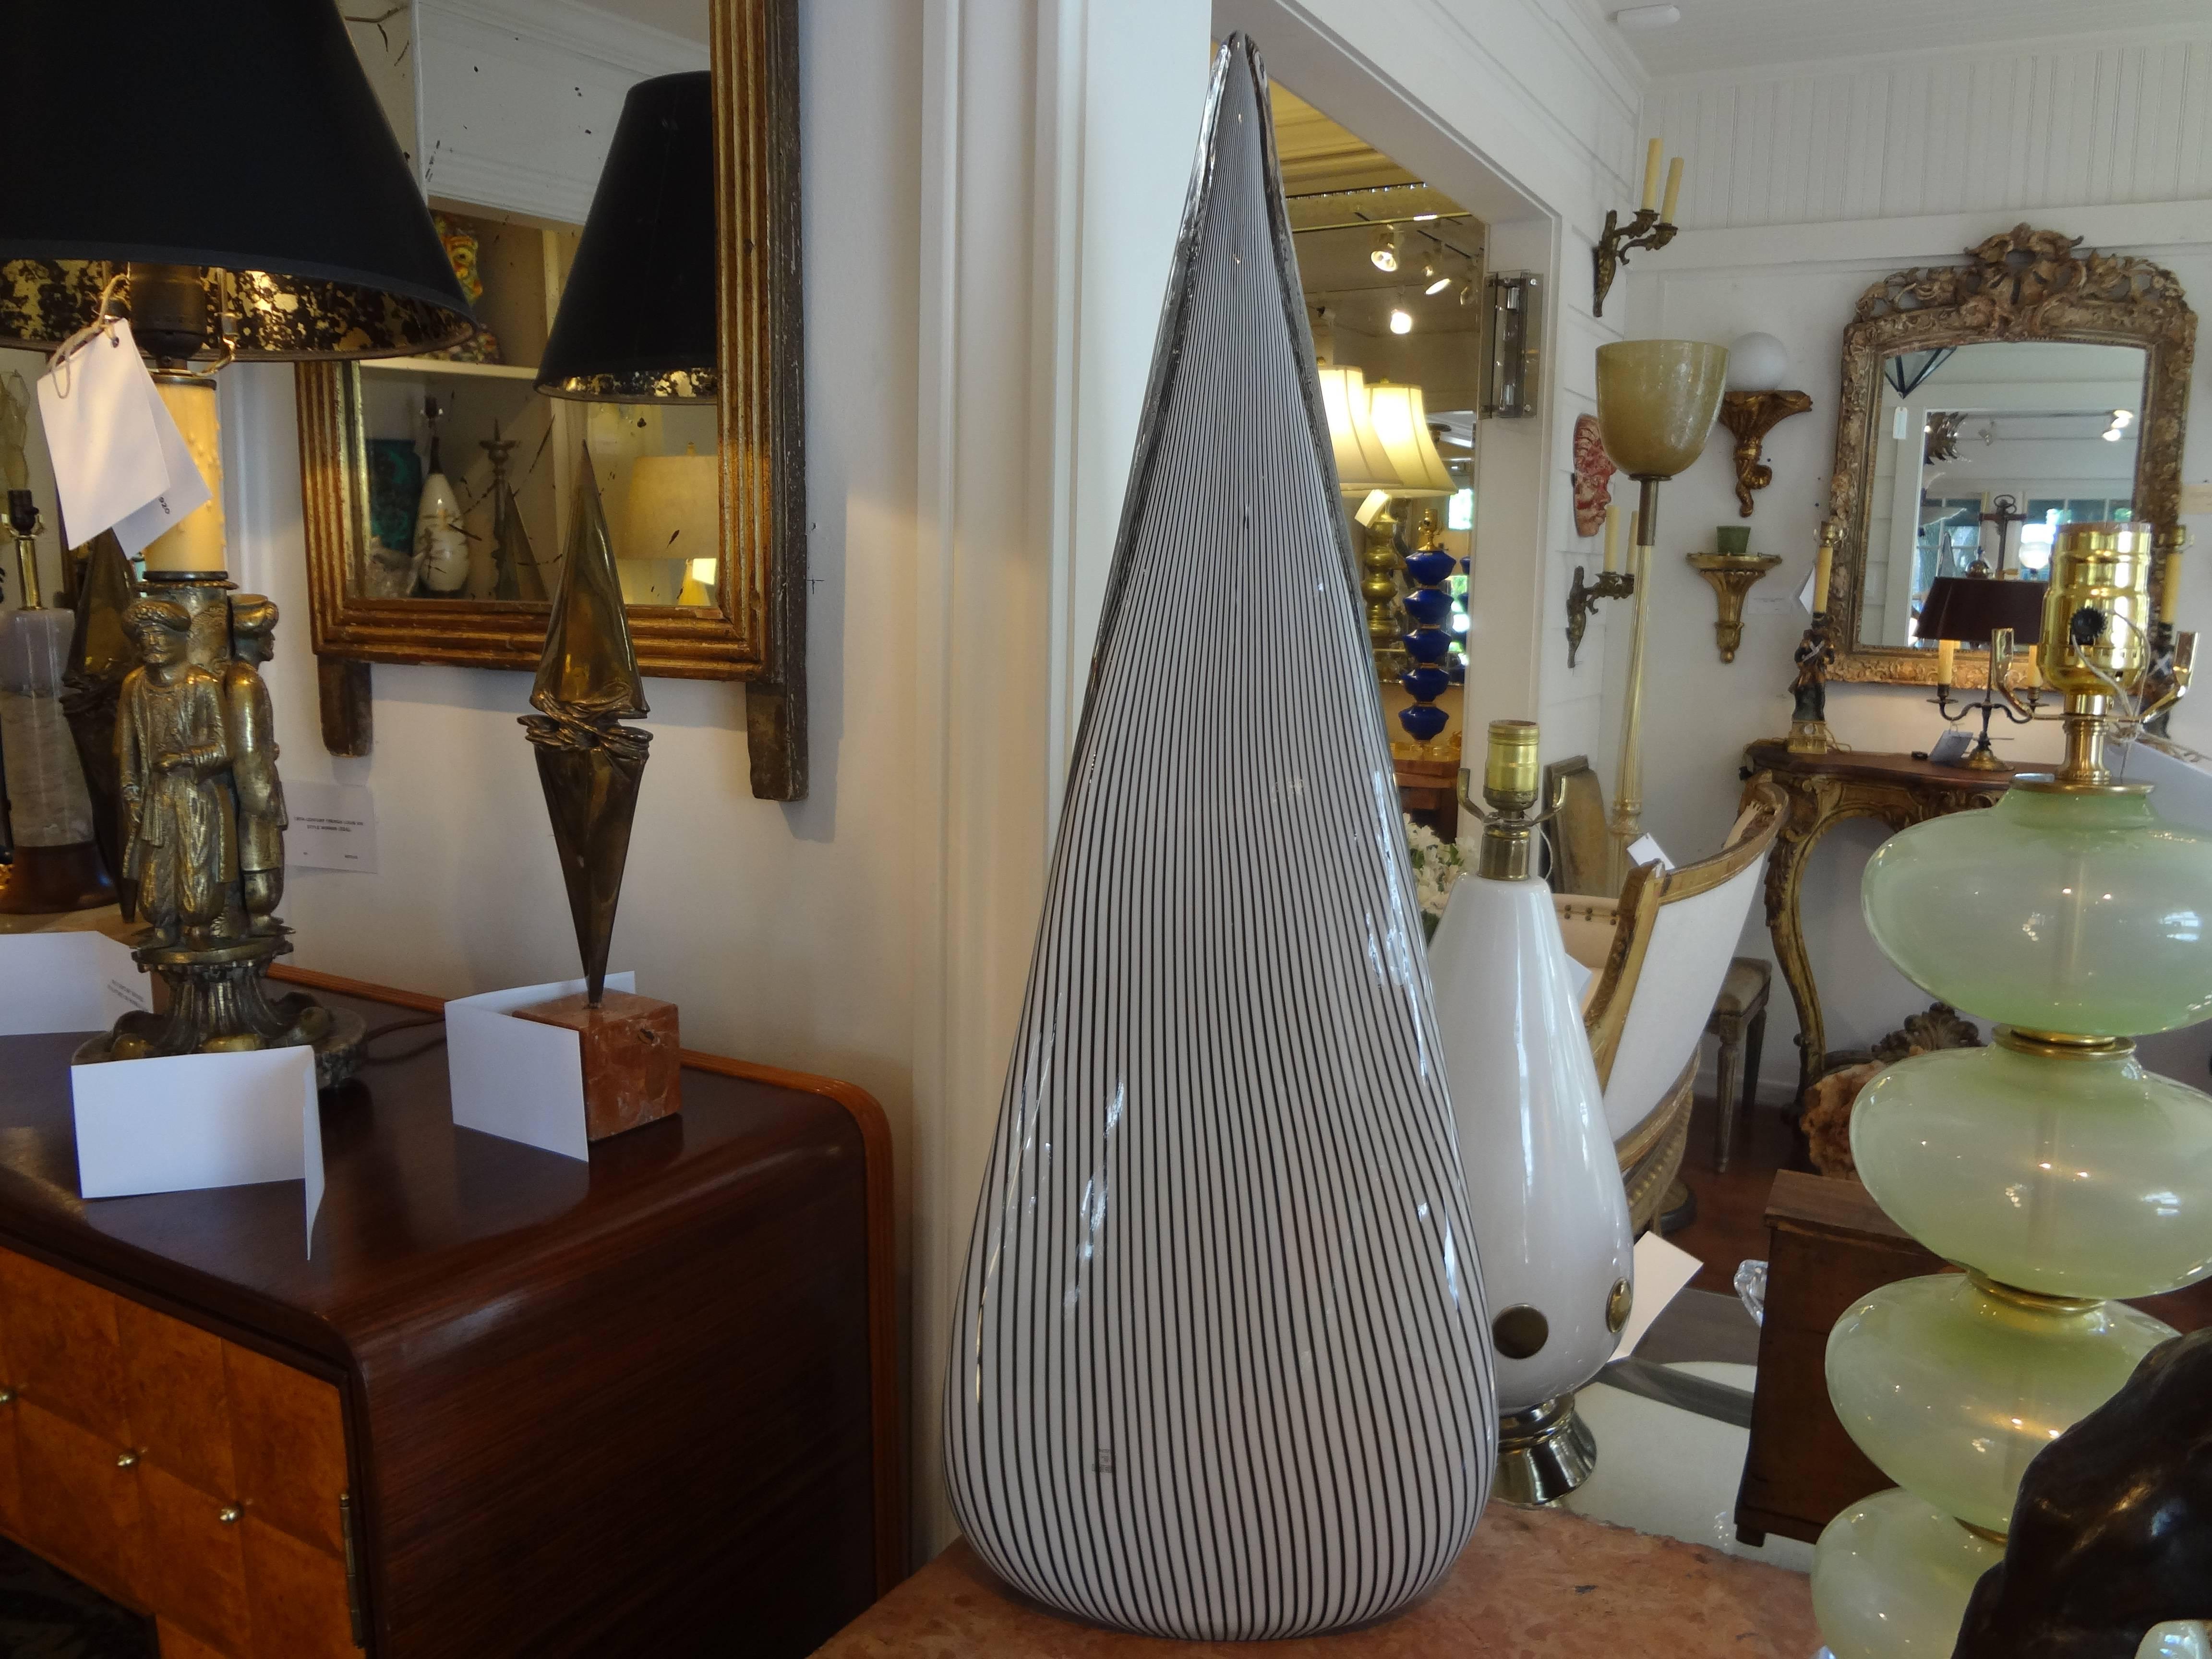 Großes Paar postmoderner Lampen aus Muranoglas in Form einer Pyramide oder eines Dreiecks. Dieses ungewöhnliche und seltene Paar italienischer Lampen wurde in den 1970er Jahren von Vetri, Murano, hergestellt. Diese Tischlampen aus venezianischem